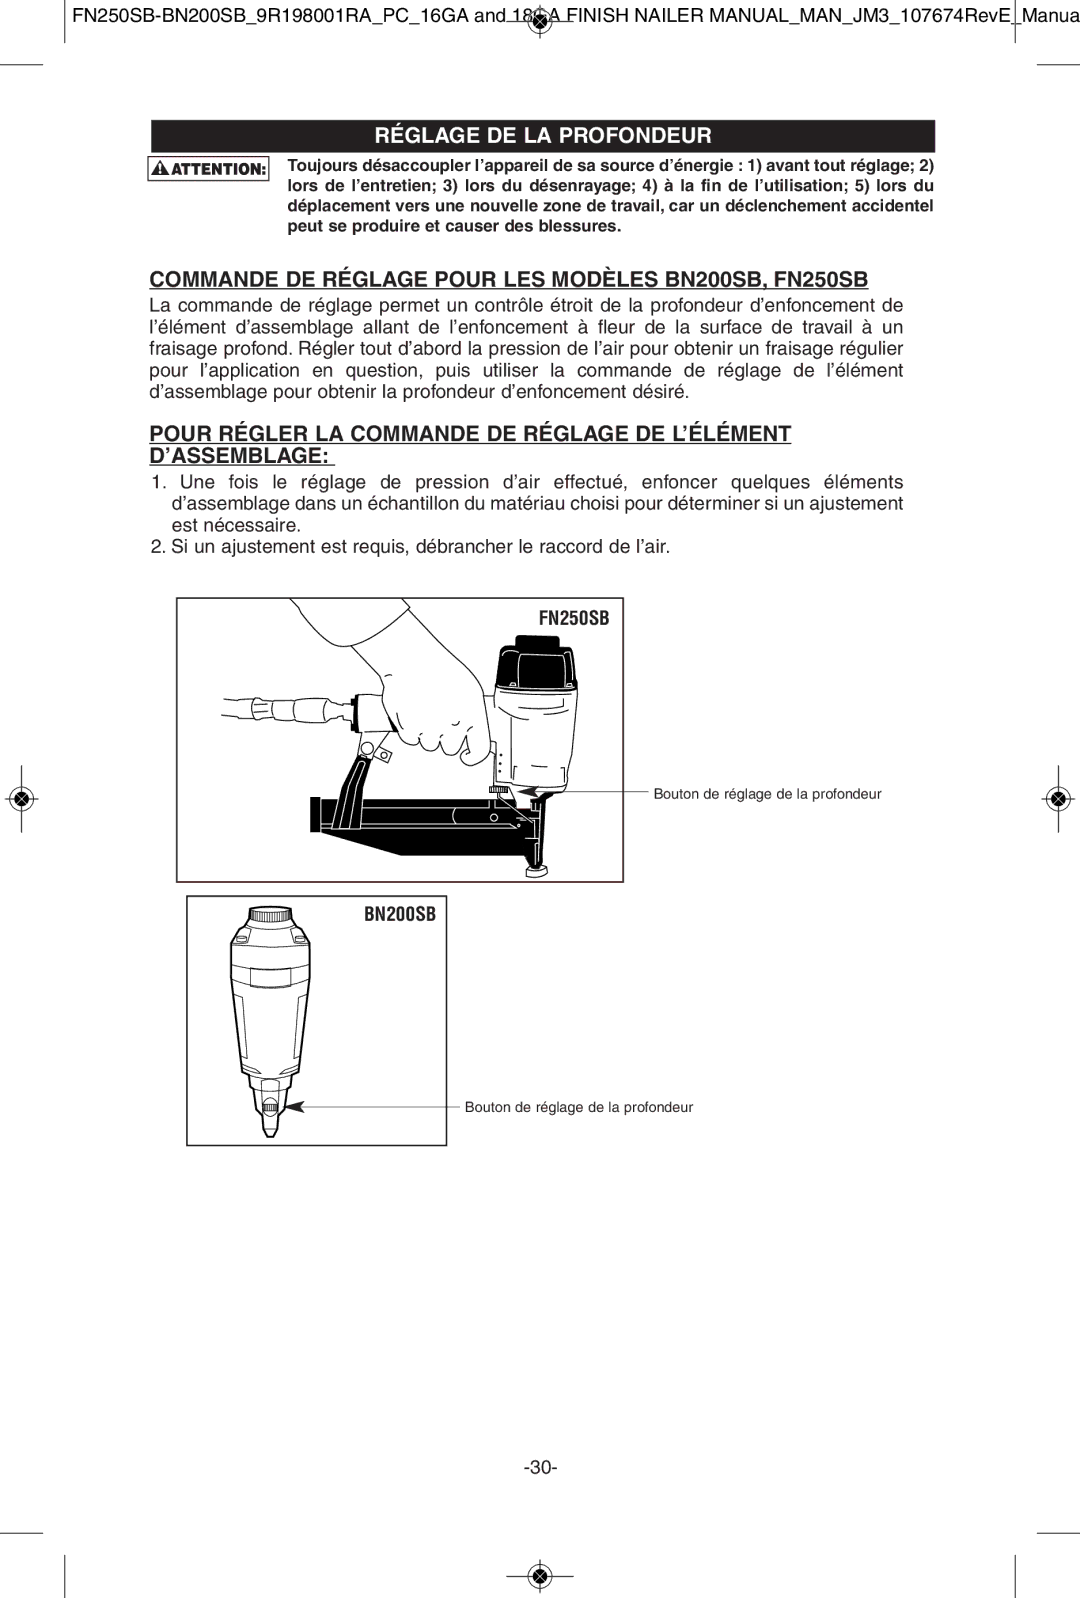 Porter-Cable instruction manual Réglage DE LA Profondeur, Commande DE Réglage Pour LES Modèles BN200SB, FN250SB 